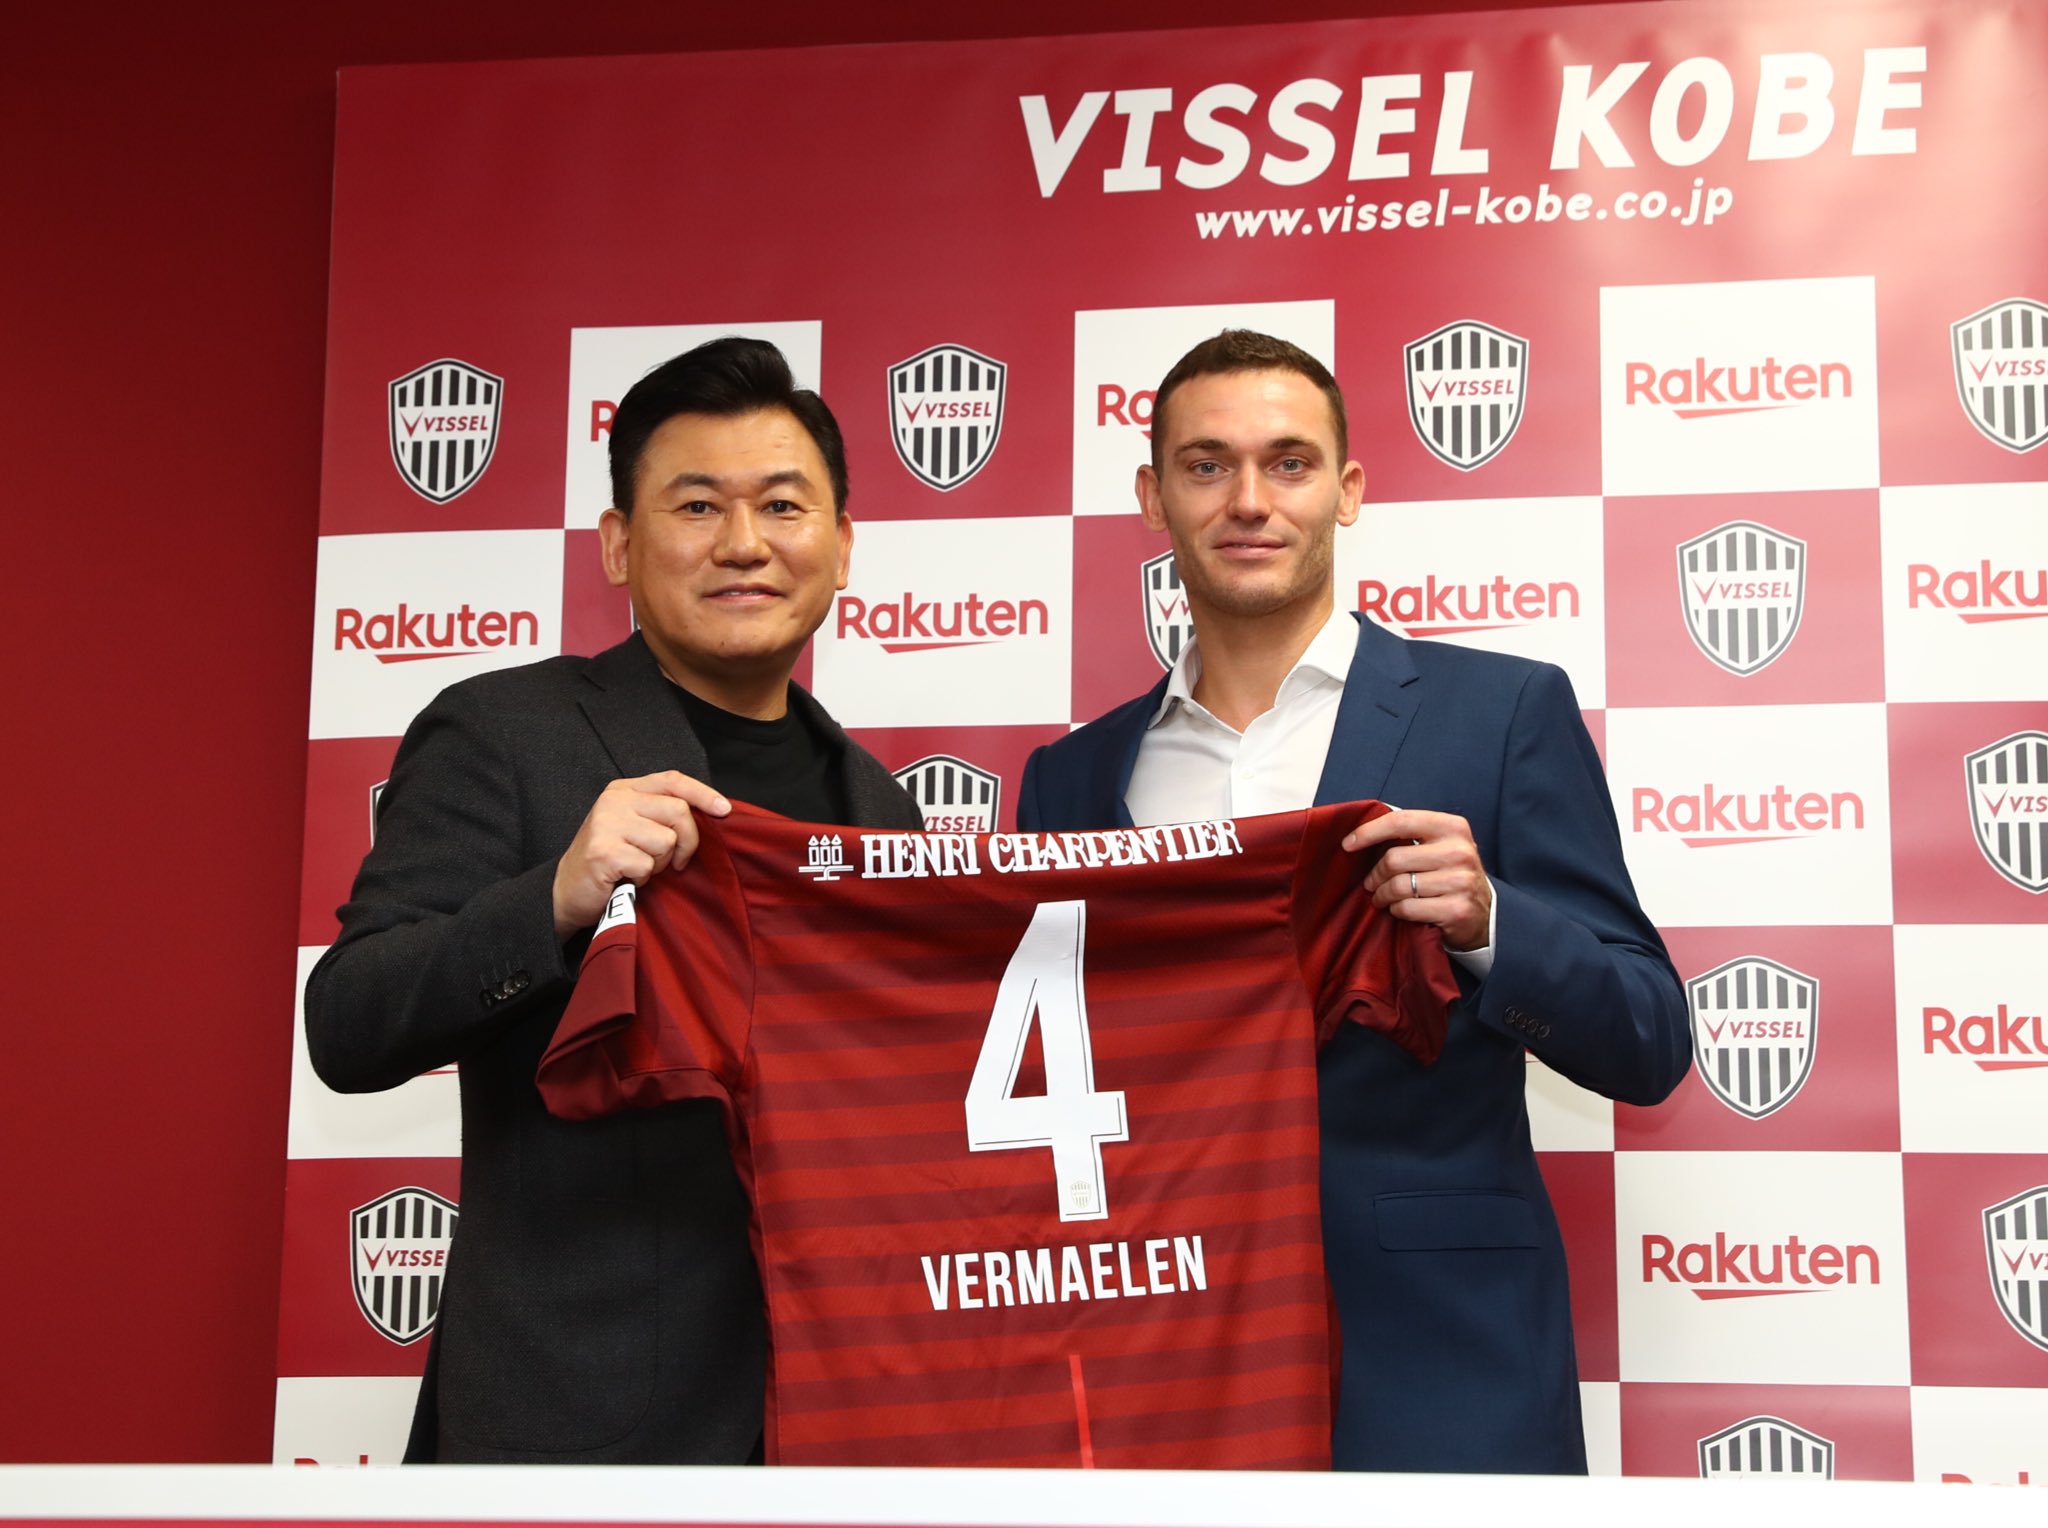 Vermaelen sigue el camino de Iniesta y también jugará en el Vissel Kobe